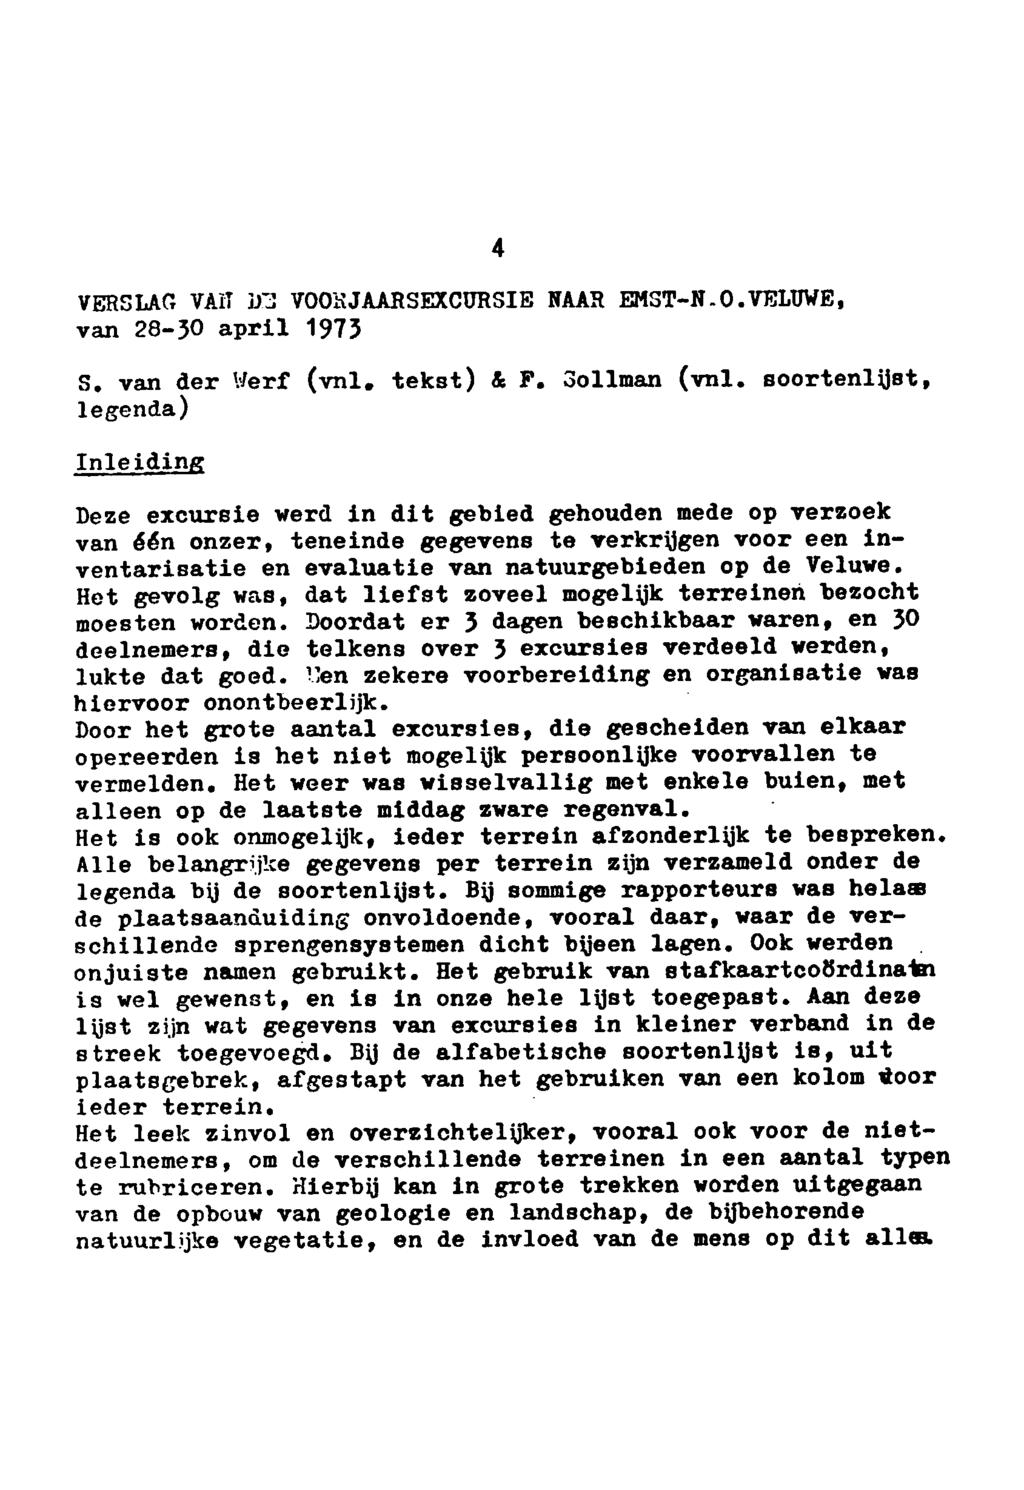 4 Verslag van de voorjaarsexcursie naar EmstN.O. Veluwe, van 2830 april 1973 S. van legenda) der Werf (vnl, tekst) & F. Sollman (vnl.